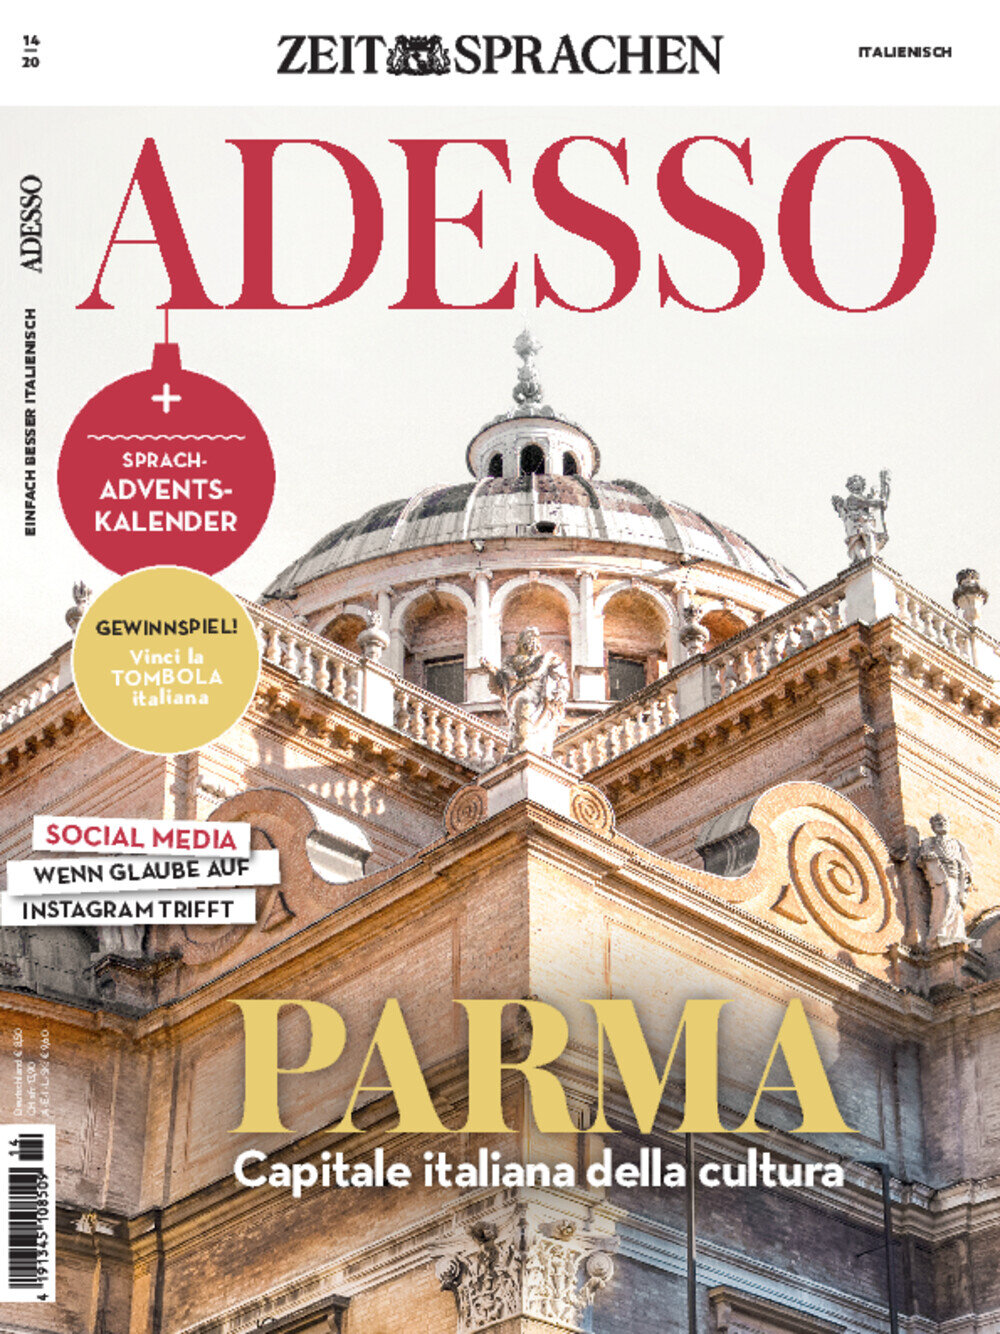 ADESSO eMagazine 14/2020